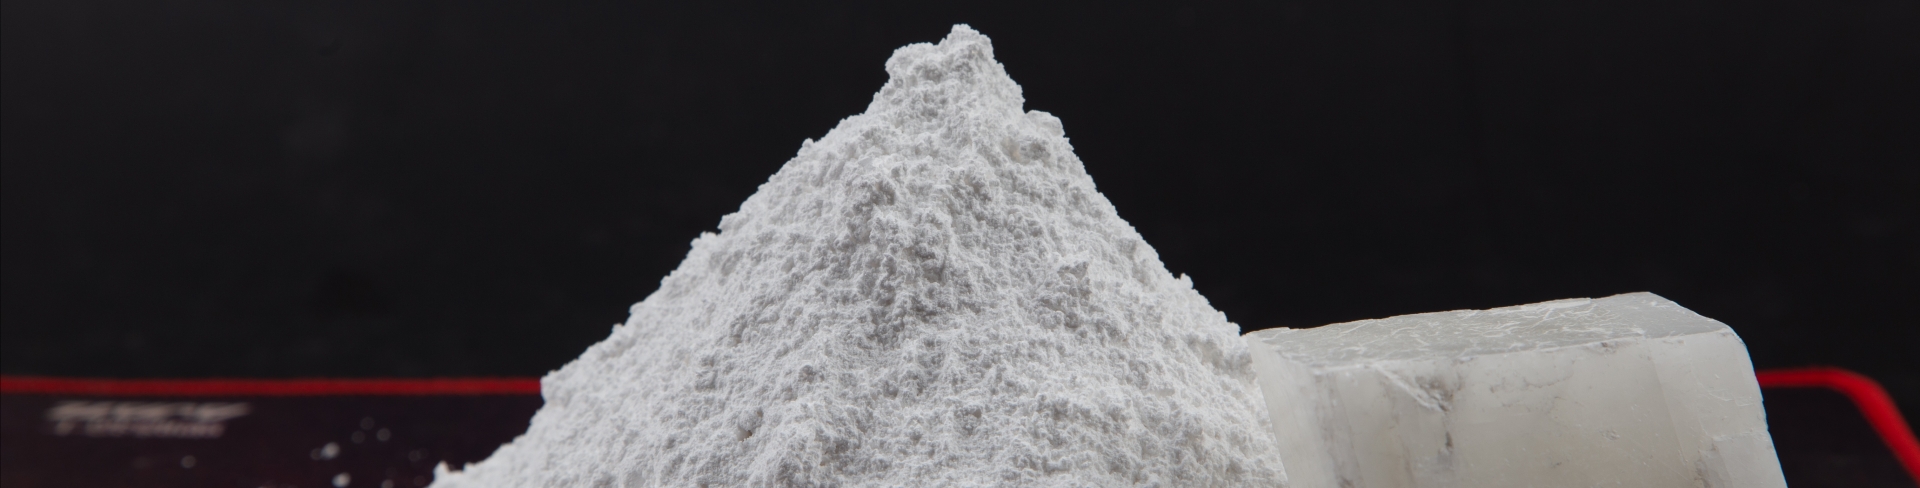 Excellent calcium carbonate powder